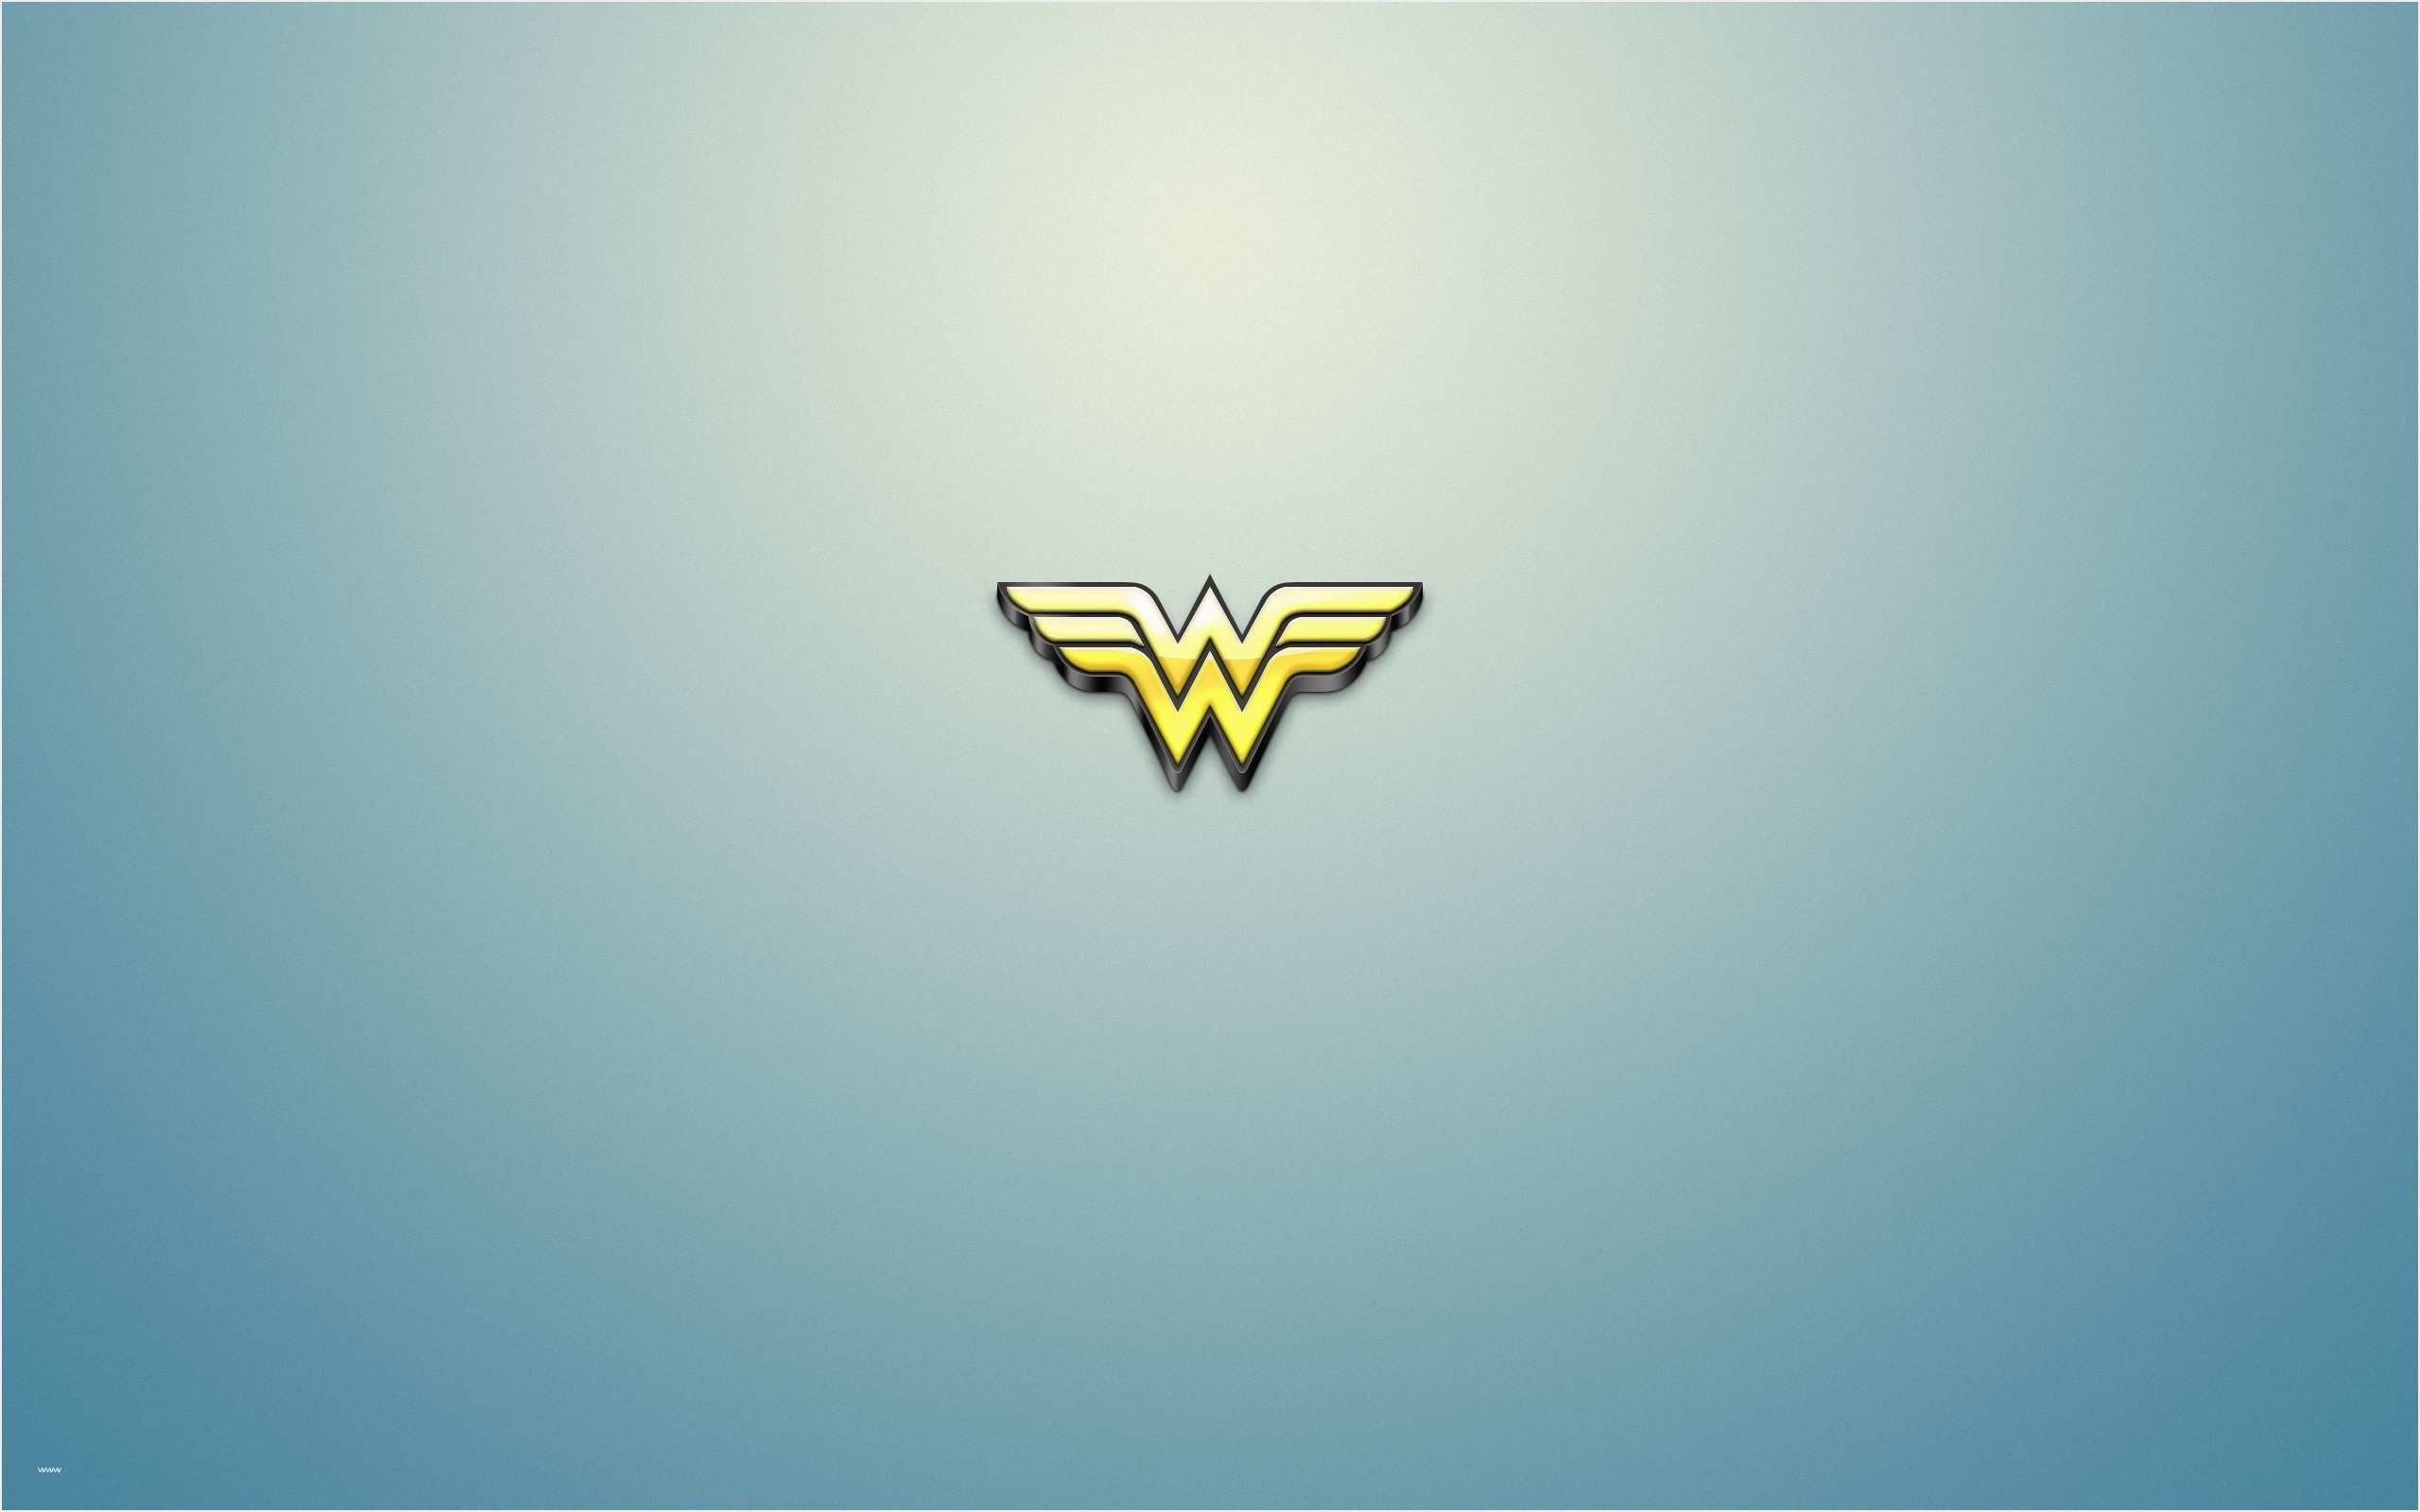 Awesome Woman Logo - Wonder Woman Logo Template Awesome Wonder Woman Logo Wallpaper ·â